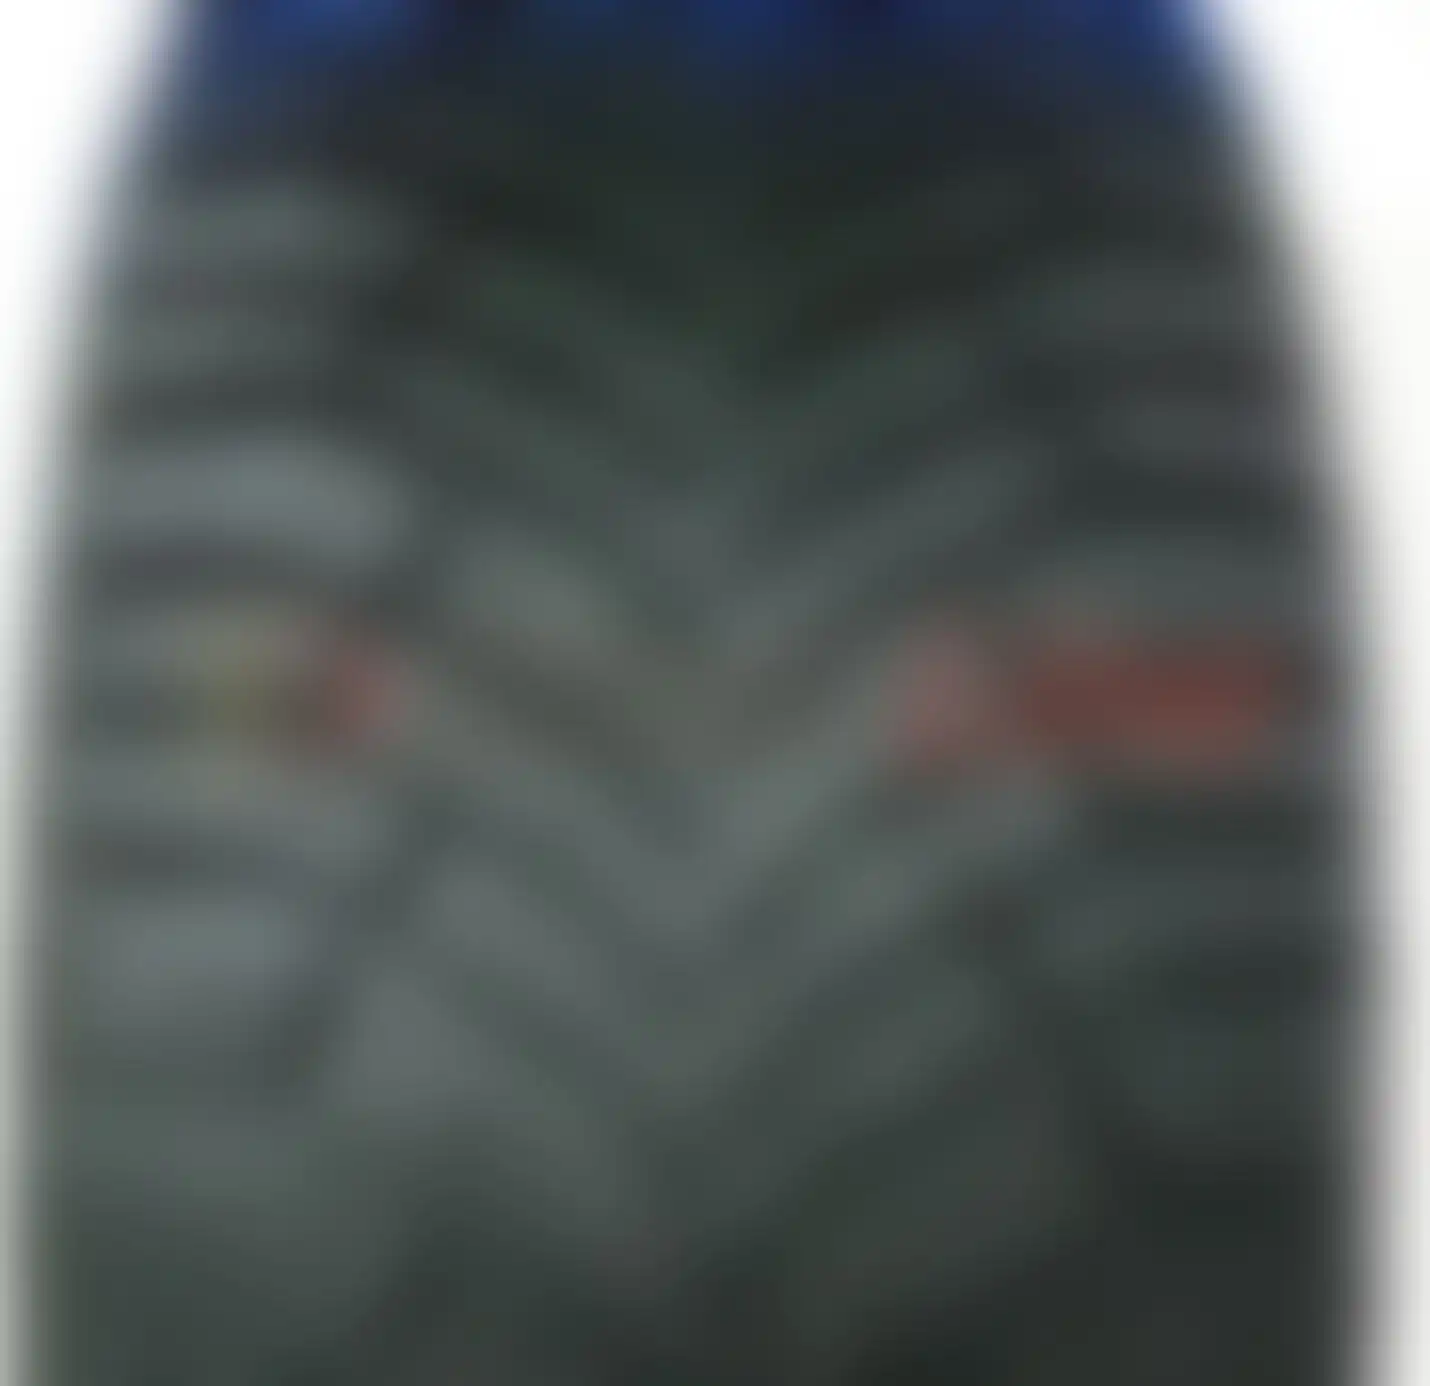 Легковая шина зимняя шипованная Michelin X-Ice North 4 215/65 R17 , фото 3